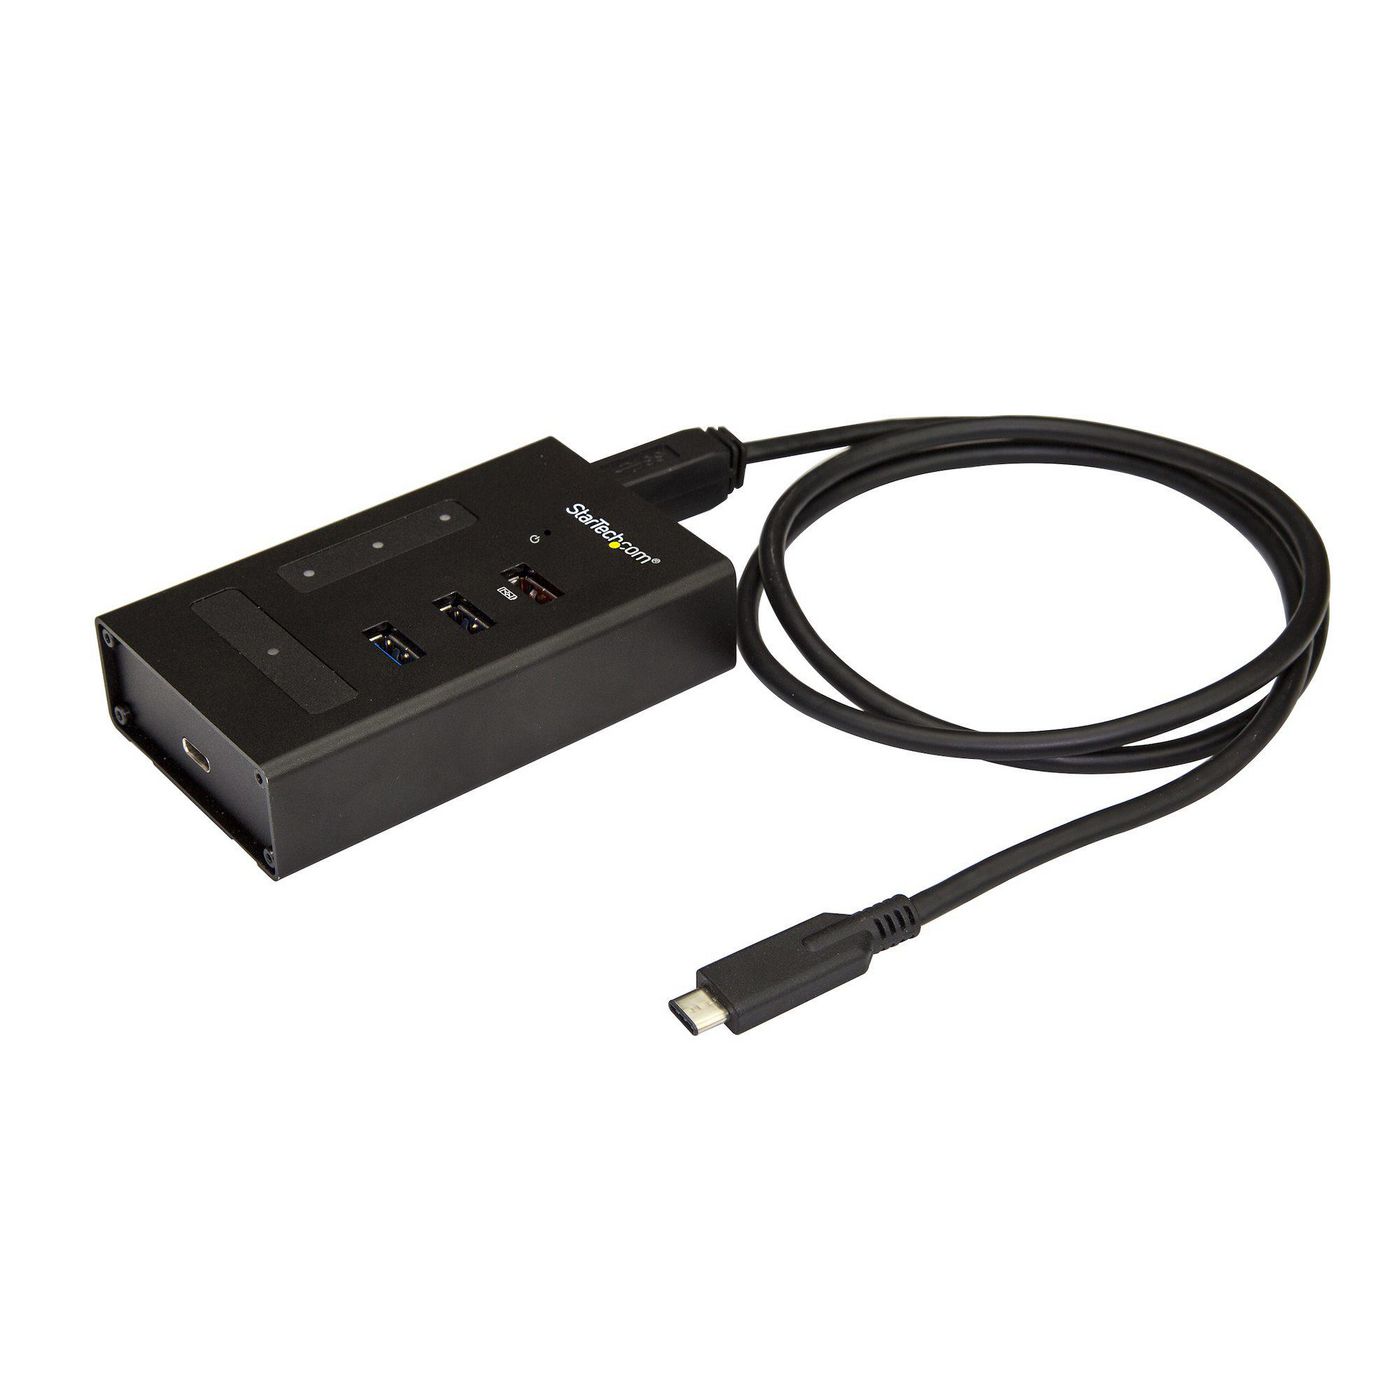 STARTECH.COM USB Hub 4 Port - Metall - USB-C zu 3x USB-A und 1x USB-C - USB 3.0 - Industrieller USB